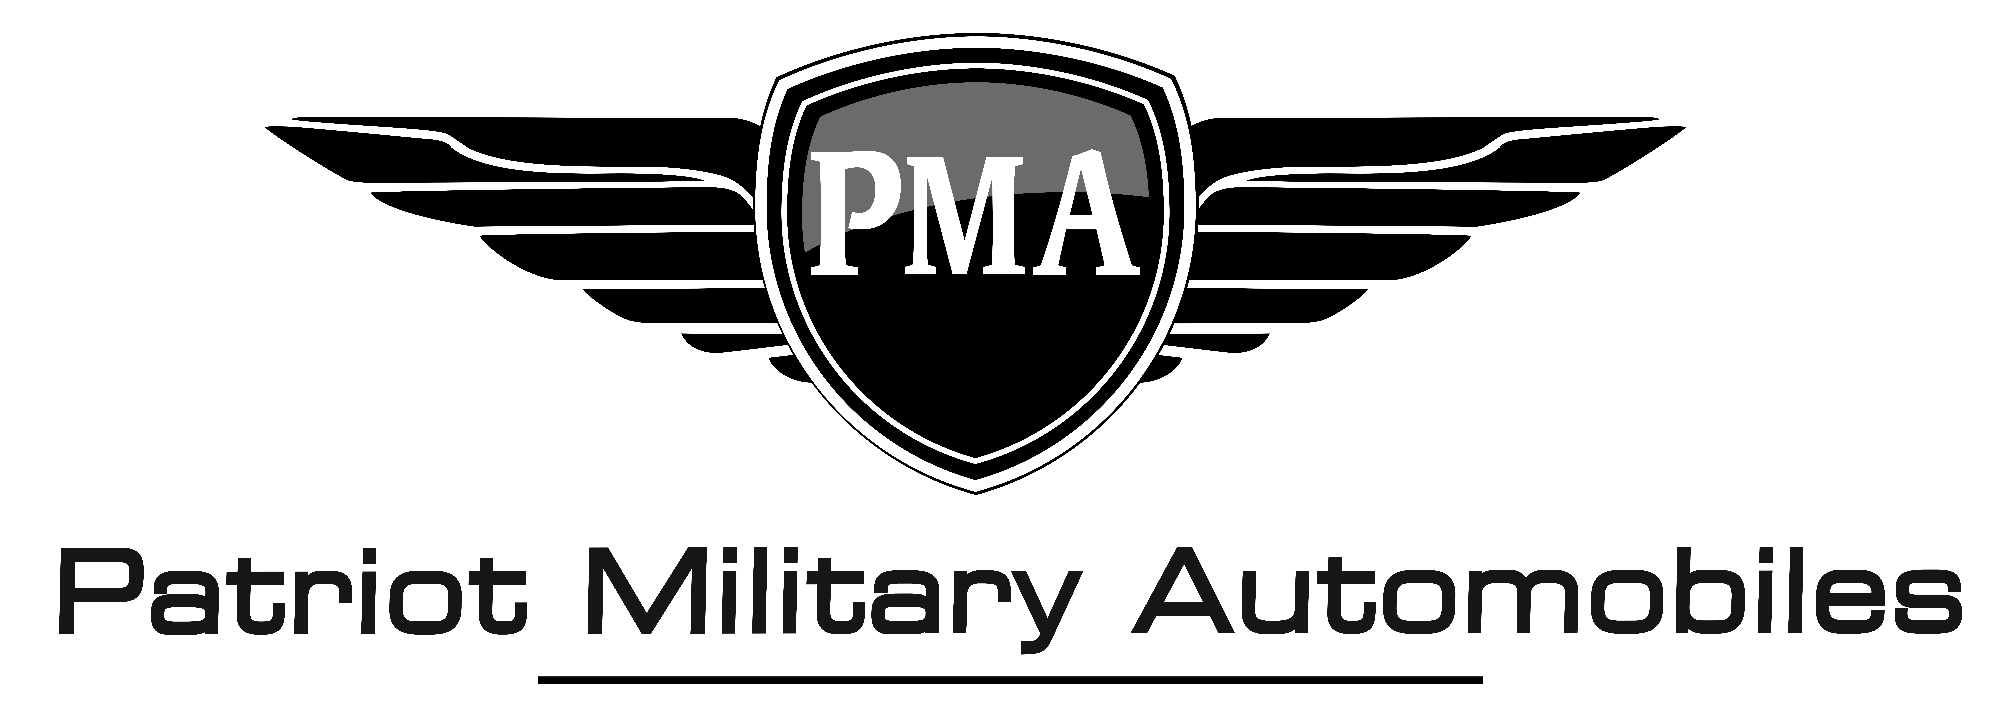 PMA_Logo.png